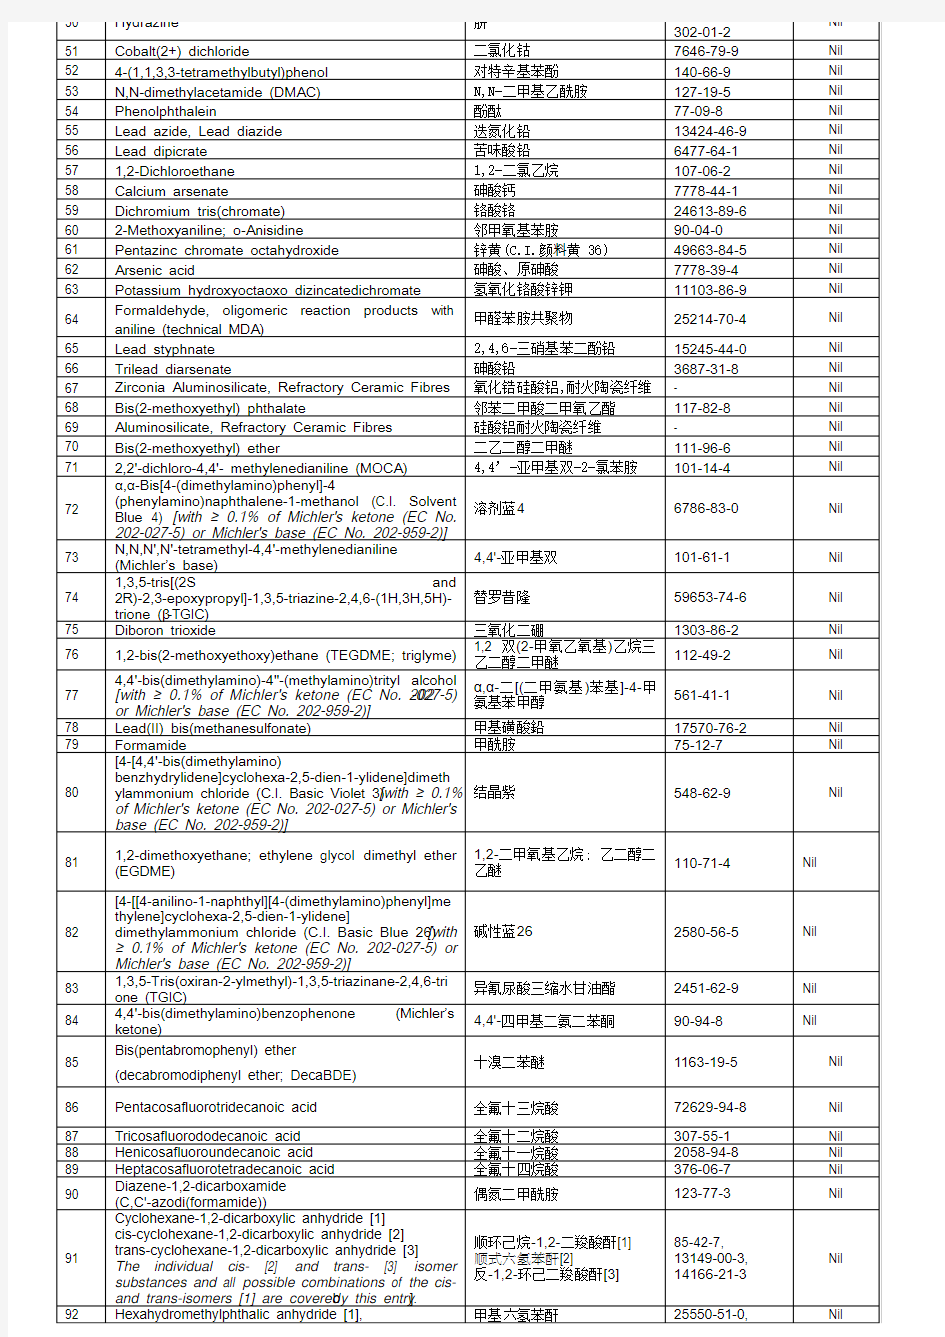 168种-中文  REACH禁用物质保证书